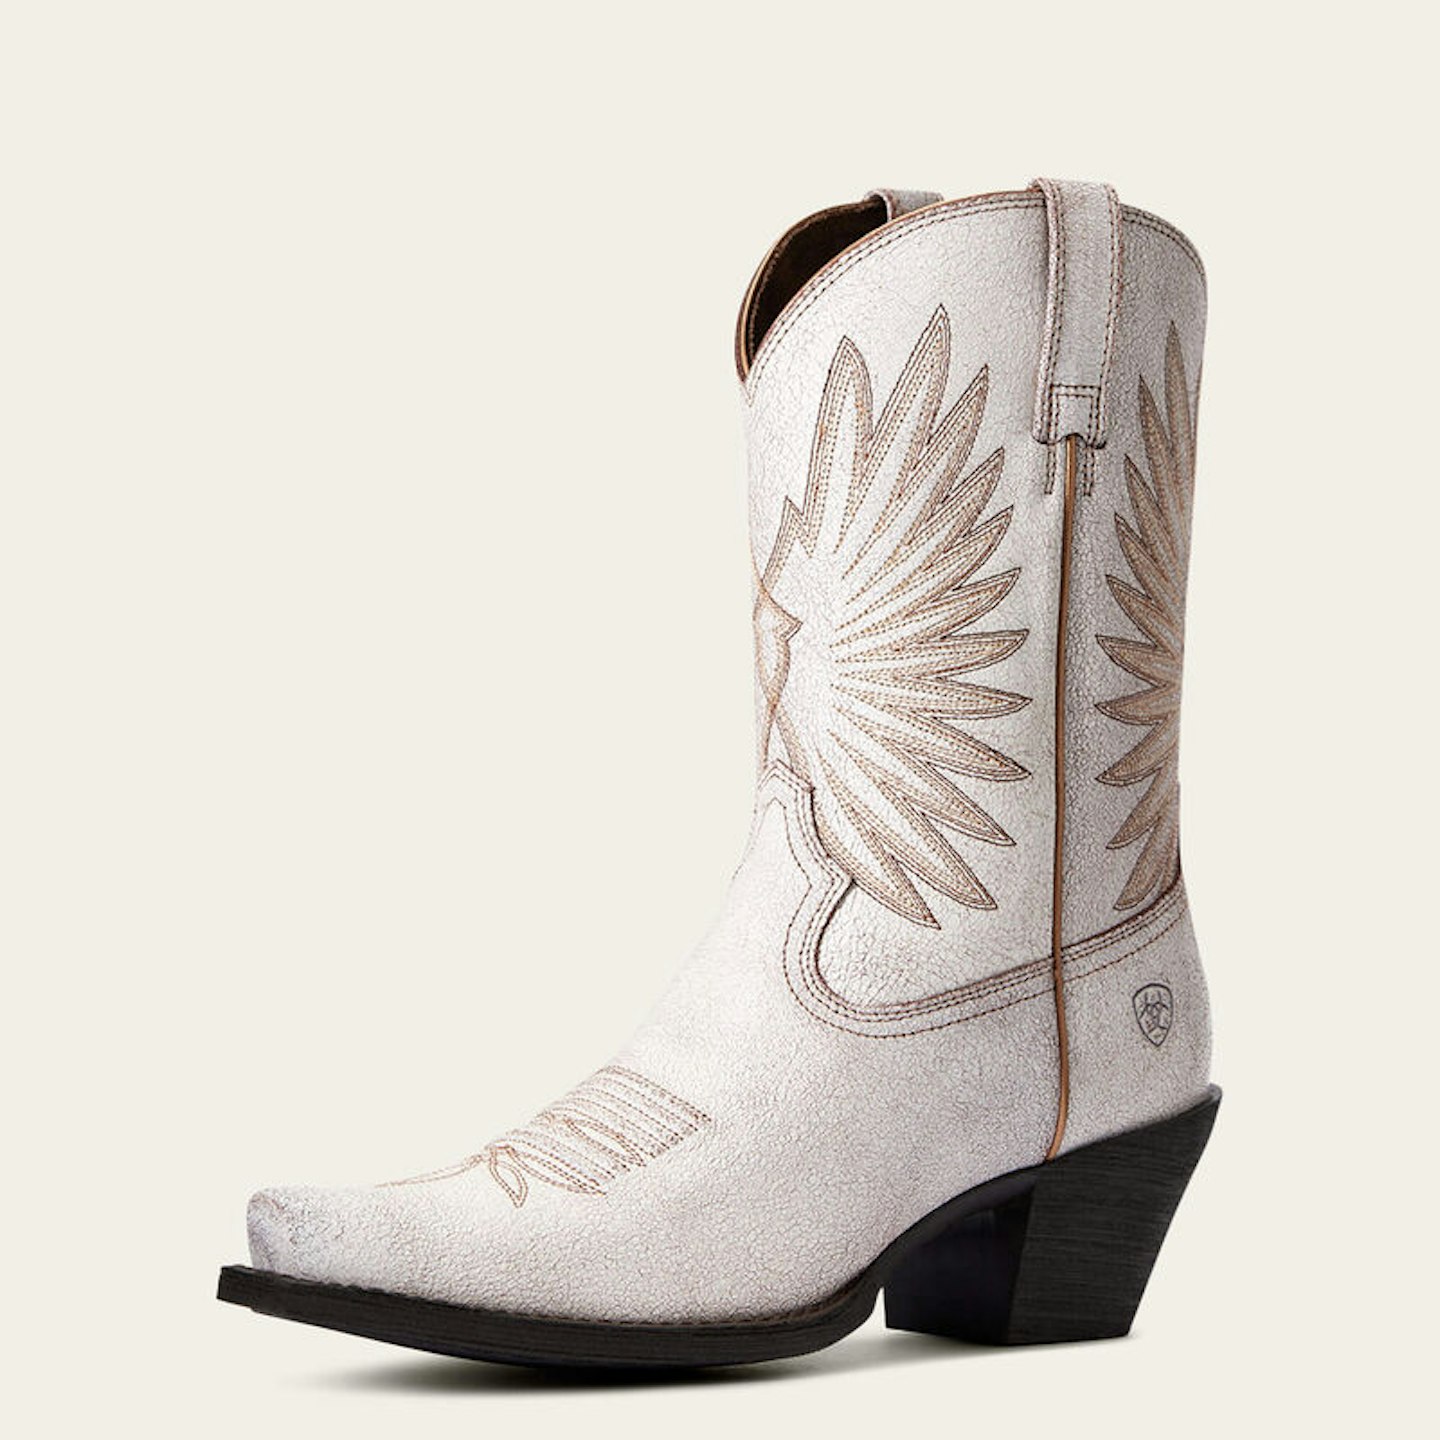 Ariat Women's Goldie Western Boot